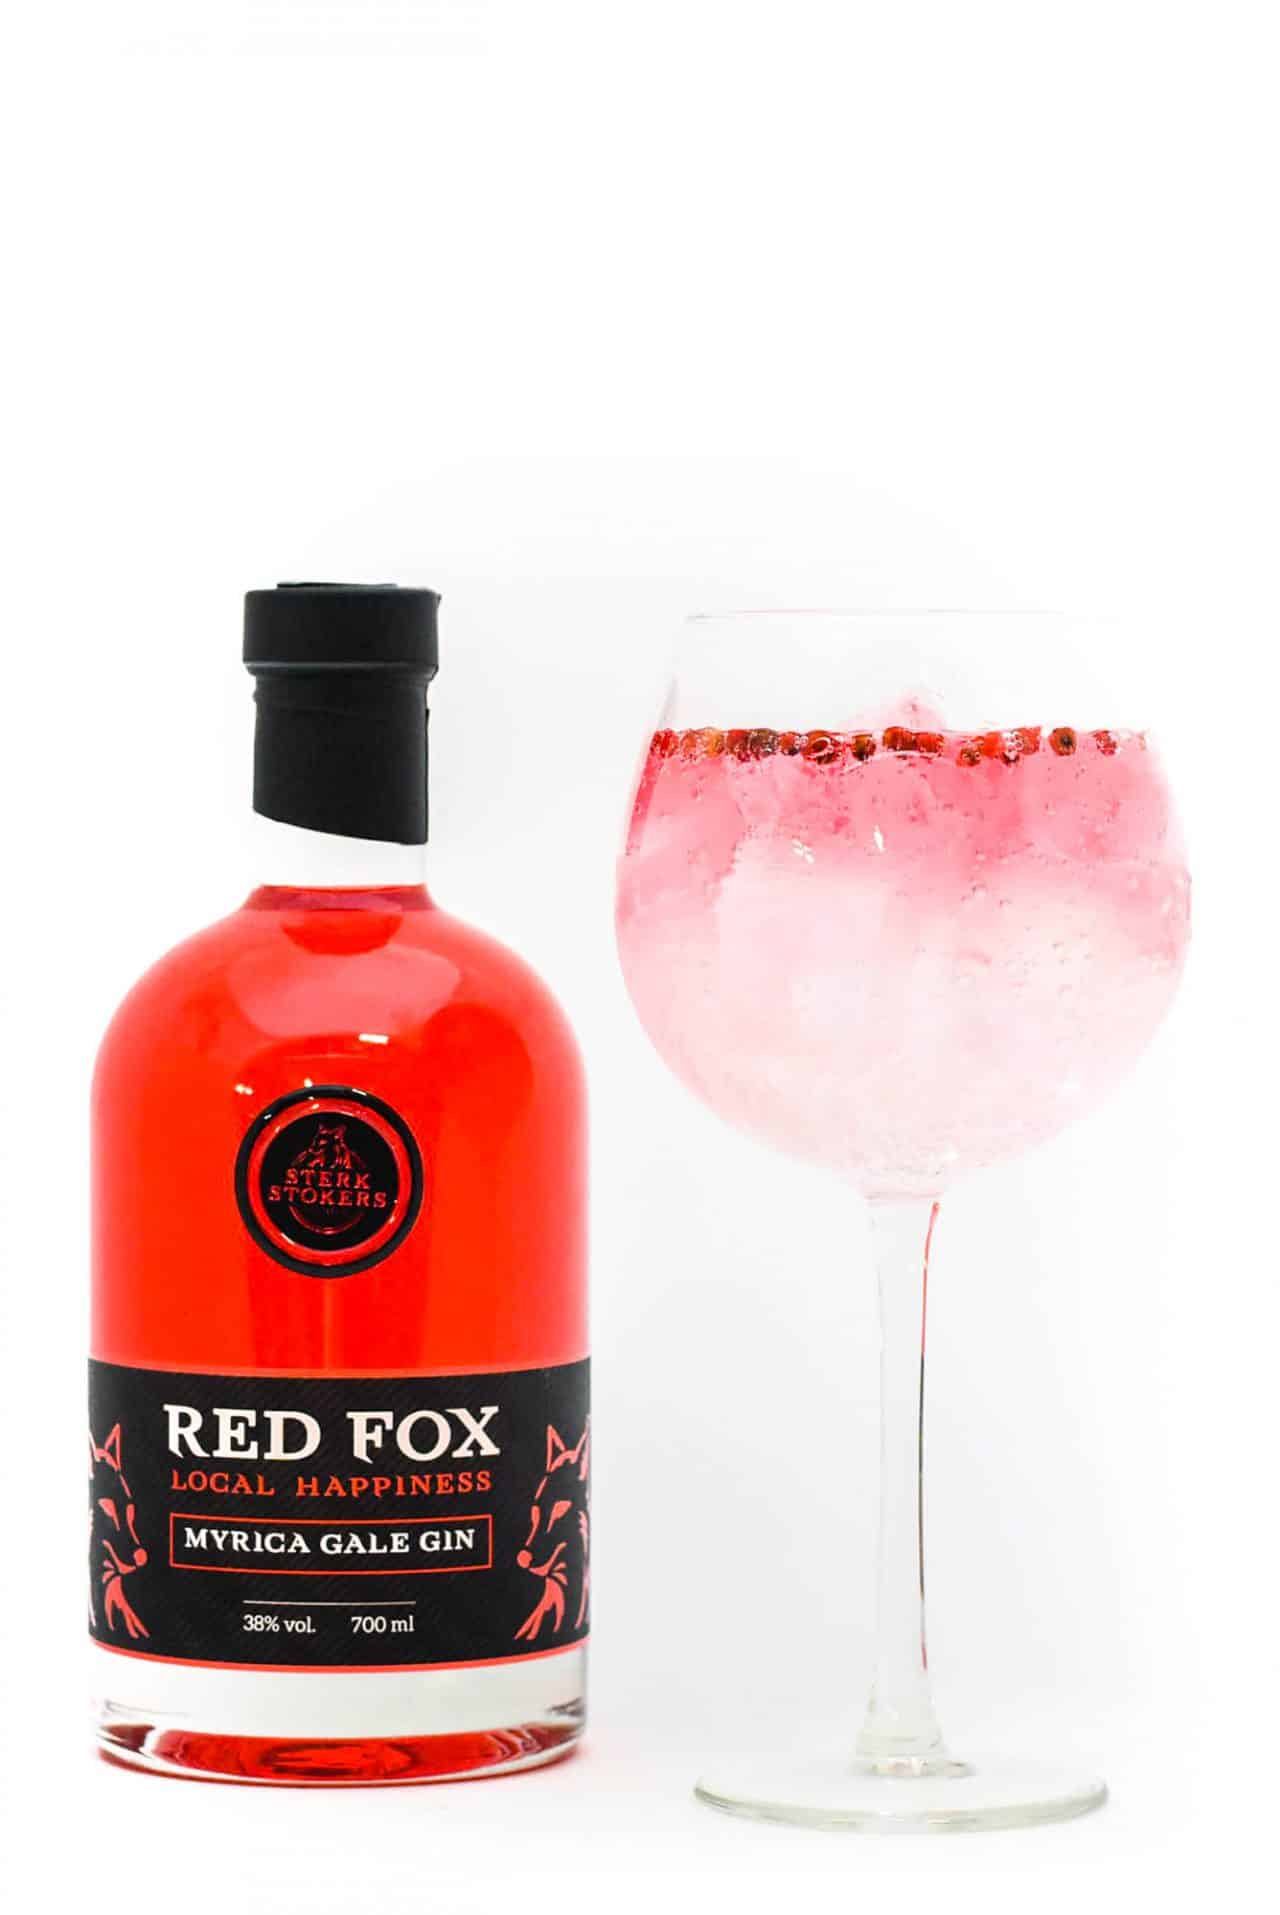 Red Fox Gin van Sterkstokers met Glas